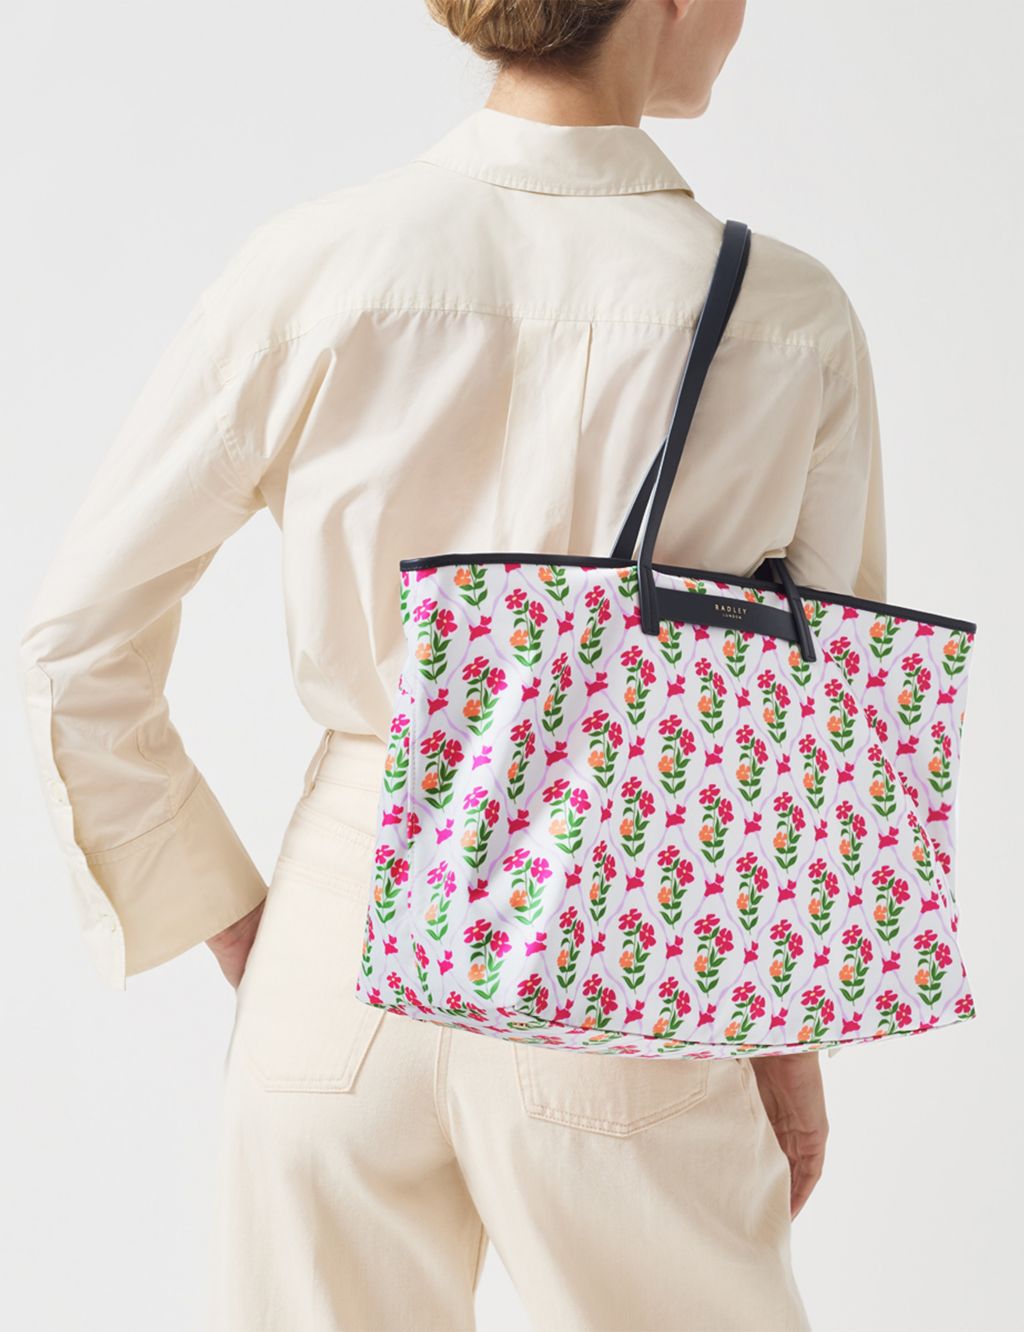 Finsbury Park Floral Shoulder Bag